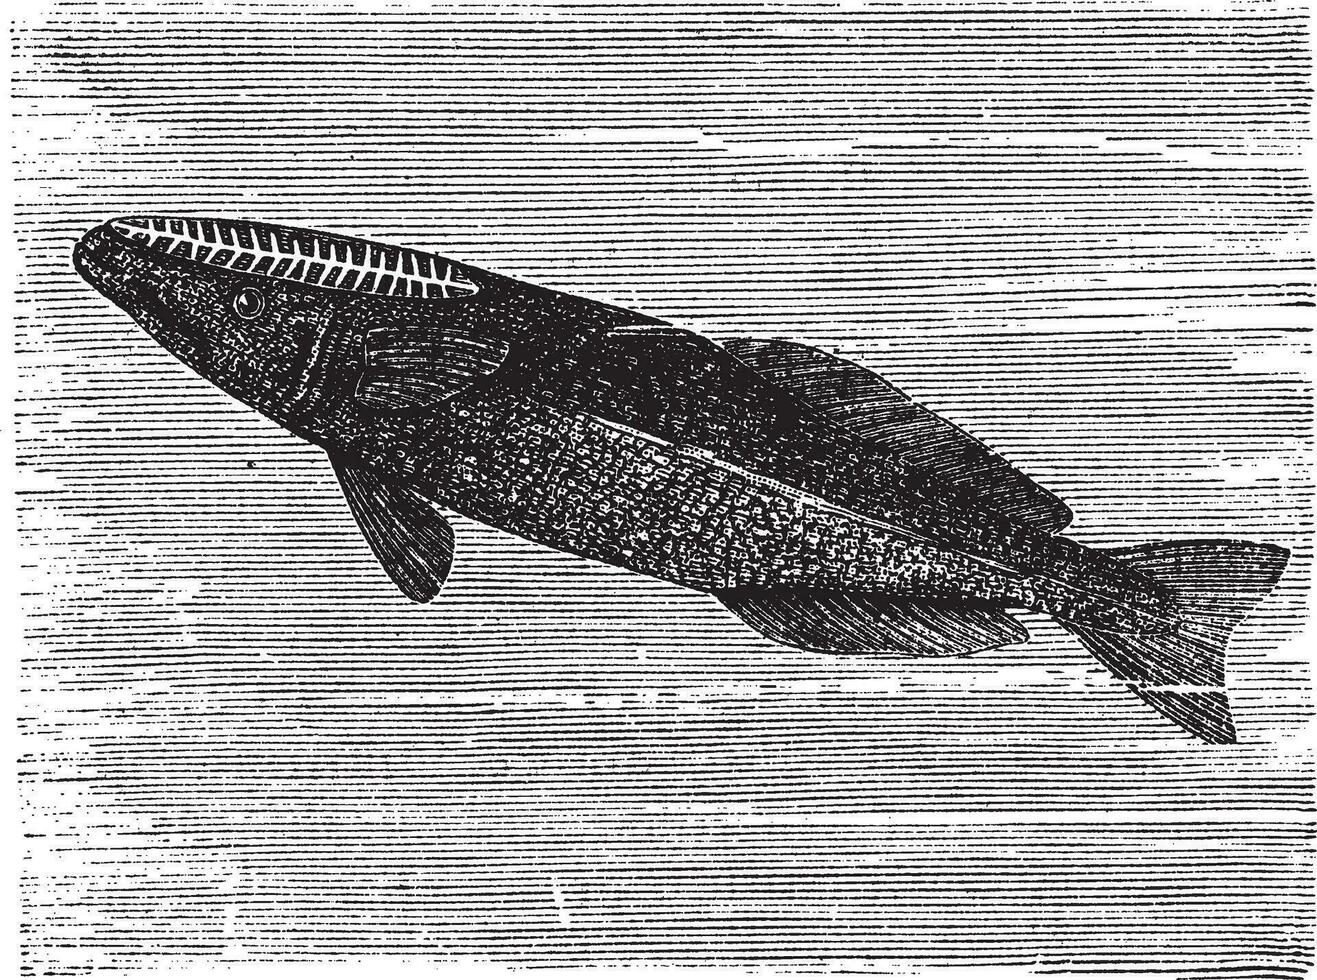 spearfish remora ou remora les brachyptères, ancien gravure vecteur